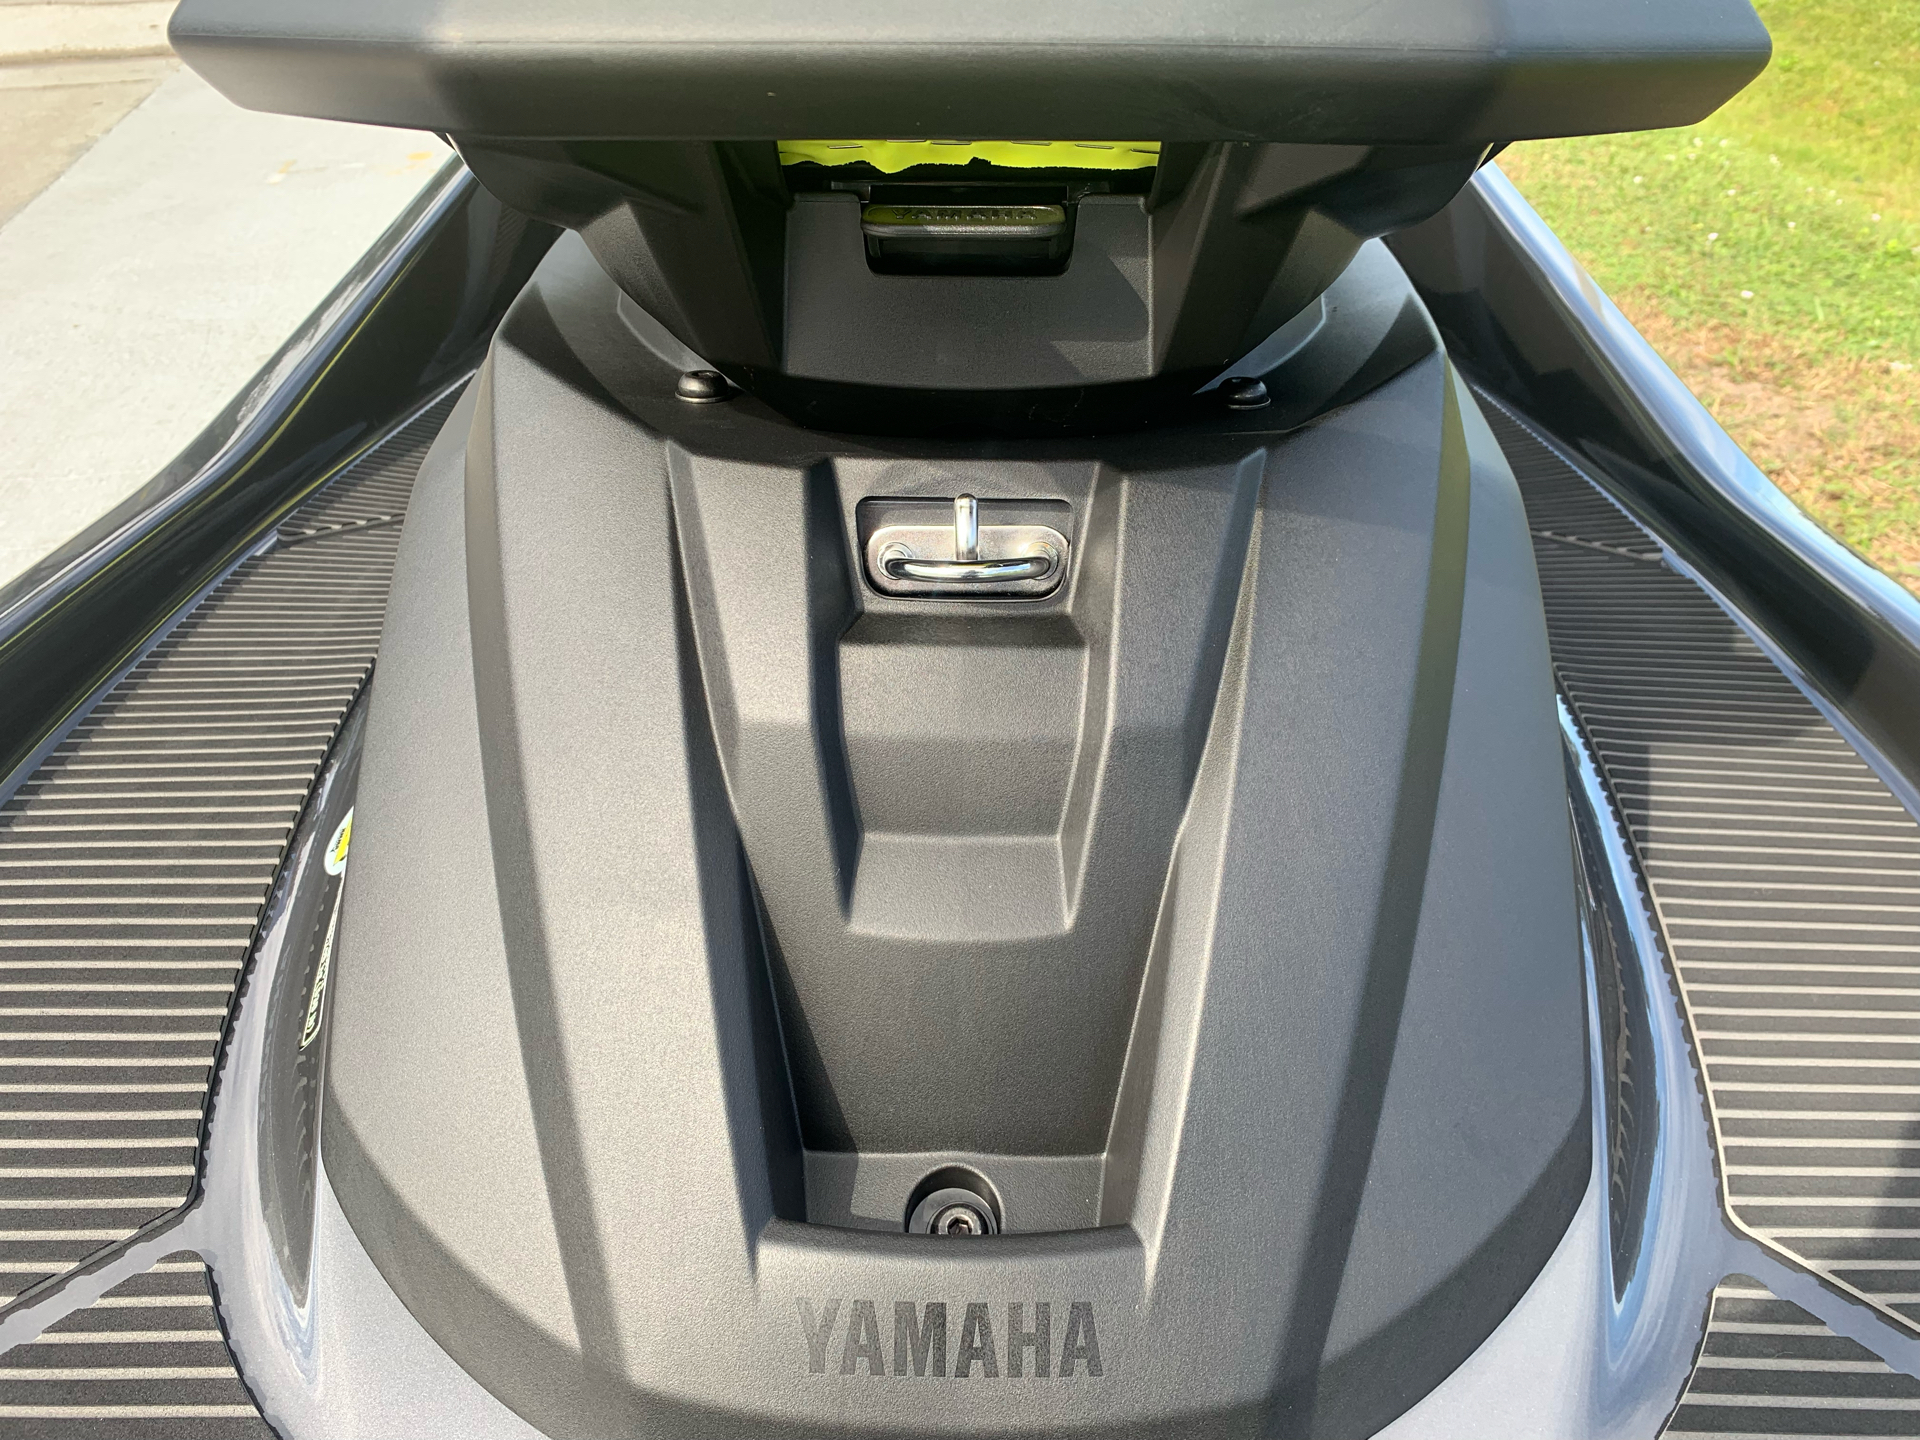 2022 Yamaha VX Deluxe in Orlando, Florida - Photo 15